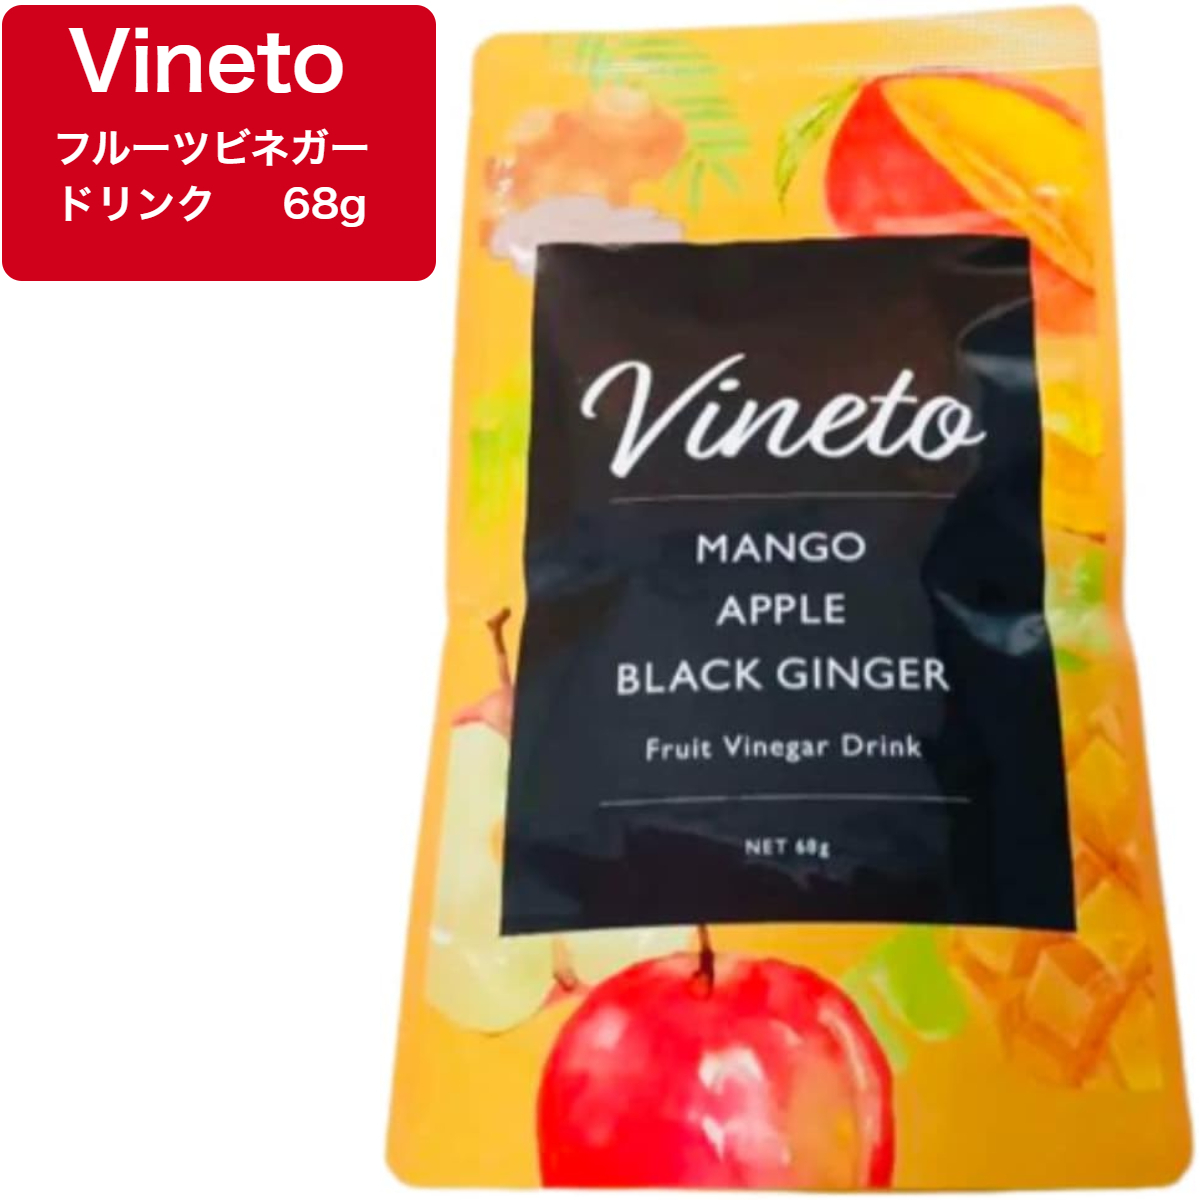 ビネット フルーツビネガードリンク 68g vineto マンゴーアップル 置き換え ダイエット サプリ ブラックジンジャー